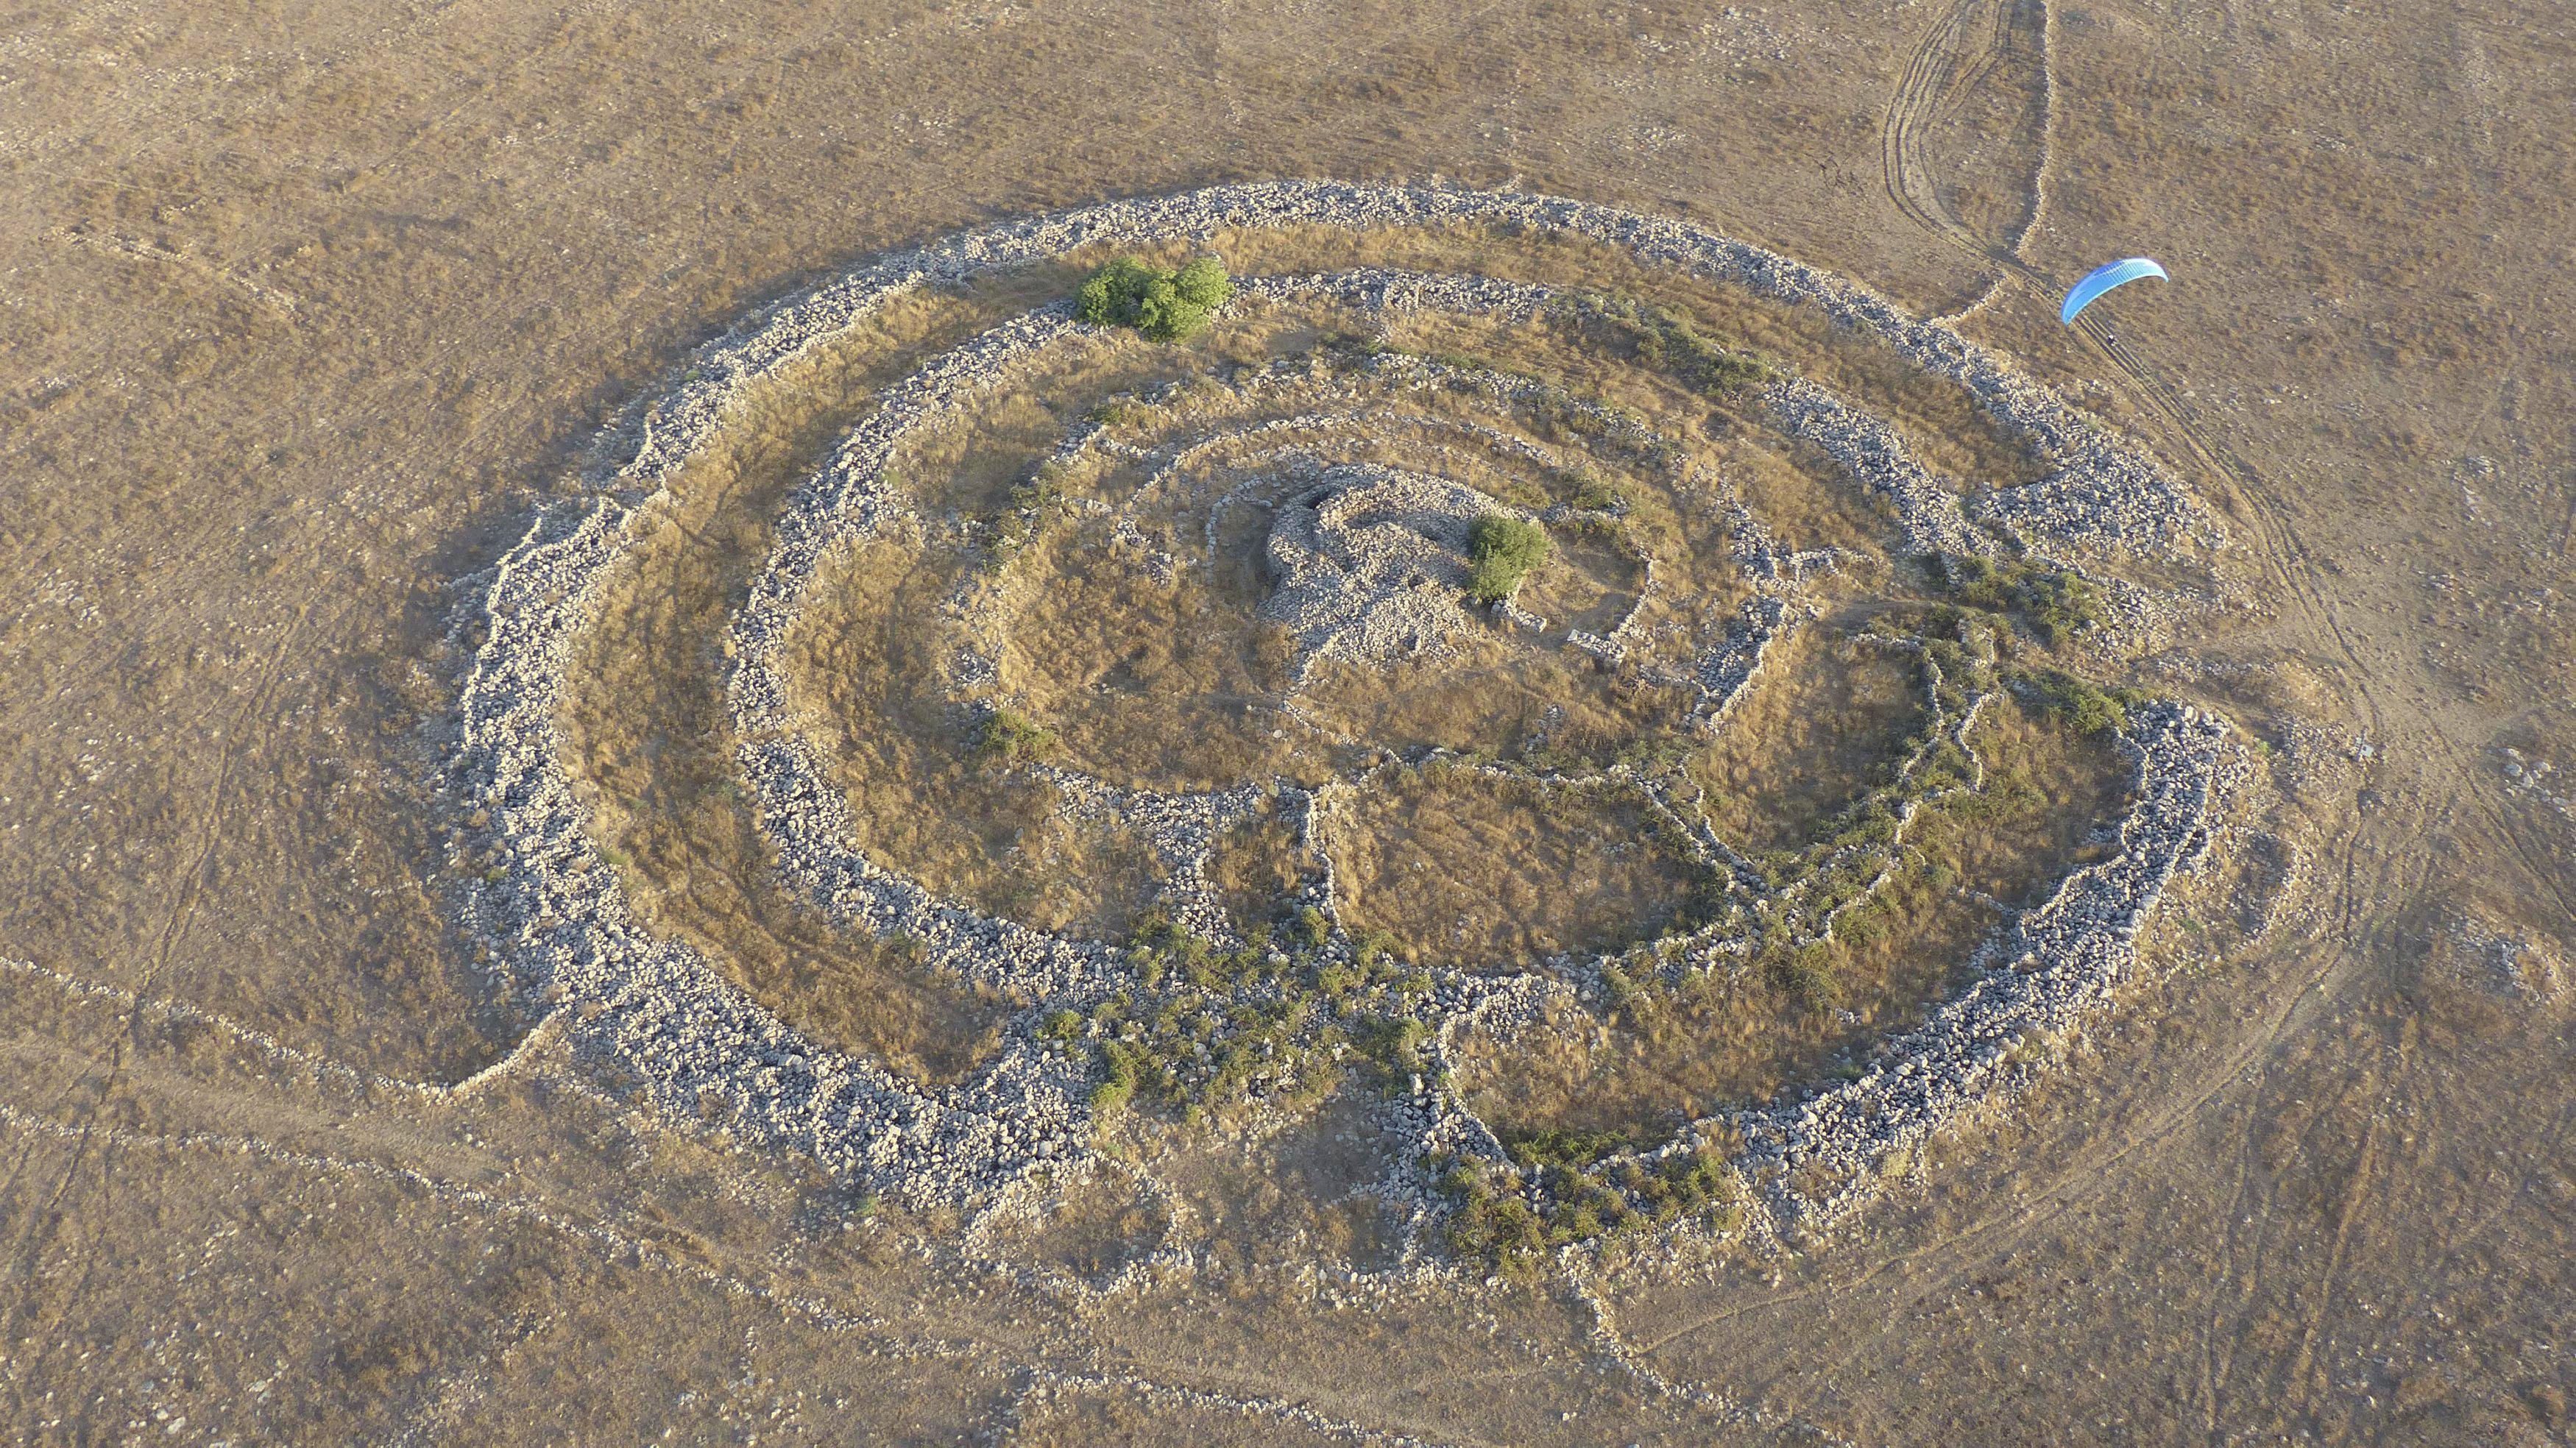 A general aerial view shows a prehistoric stone monument, known as Rujm el-Hiri in Arabic, as a para